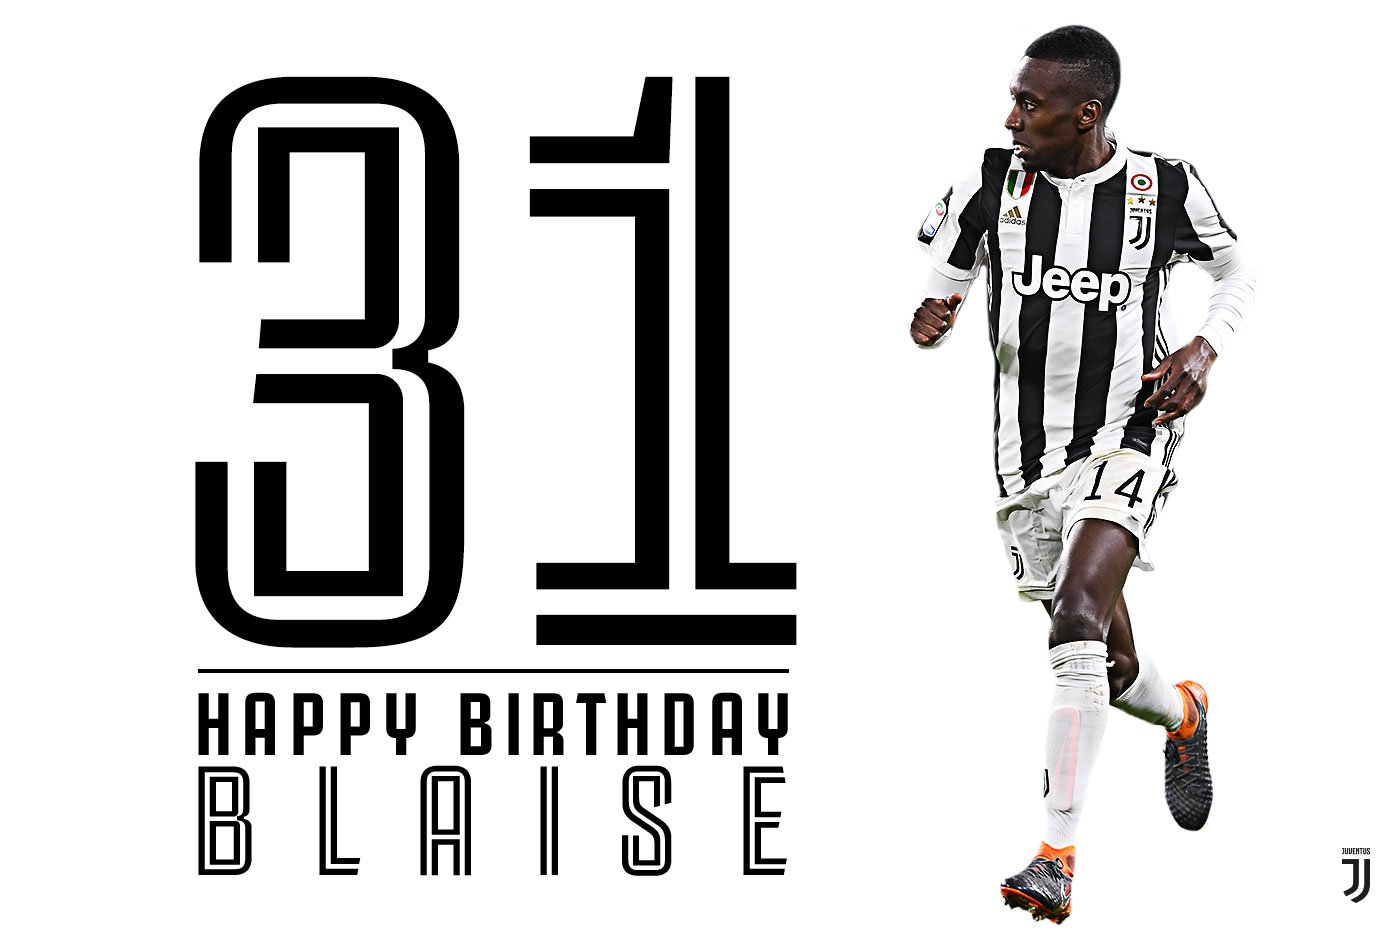 Team:Bon anniversaire, Blaise!  